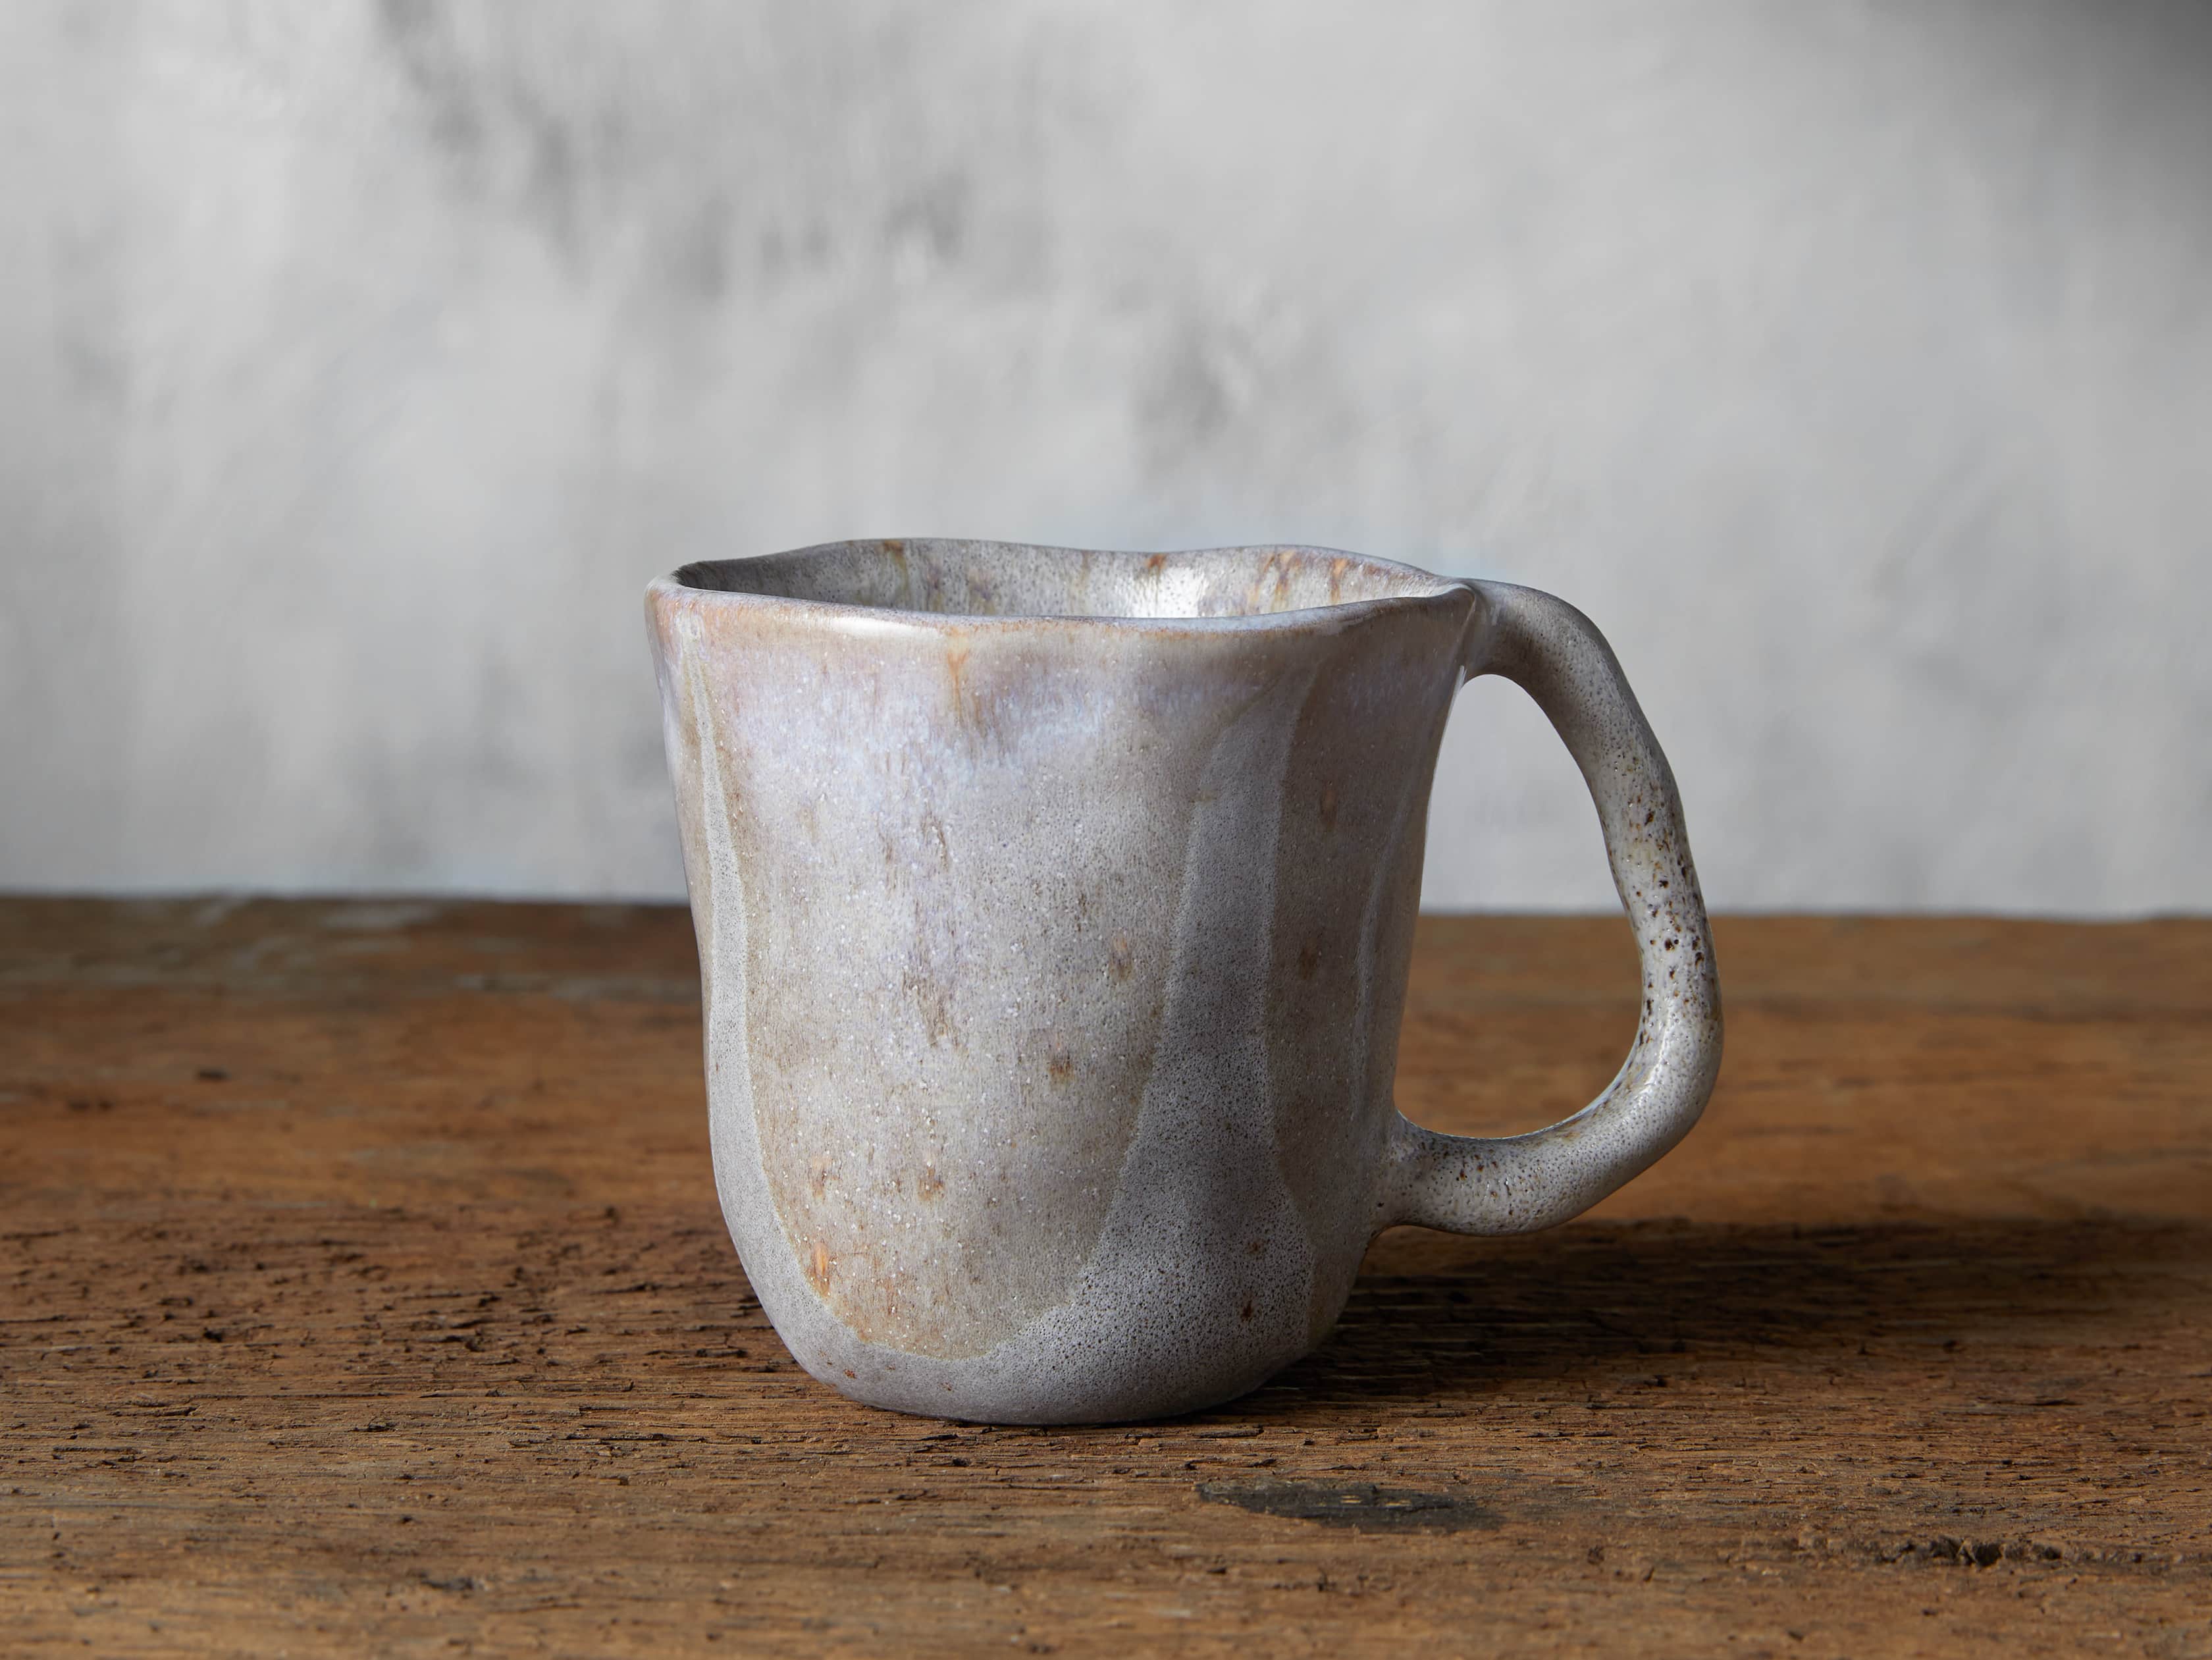 Undify Tasse à café thermique en céramique avec changement de couleur  Twilight Moon